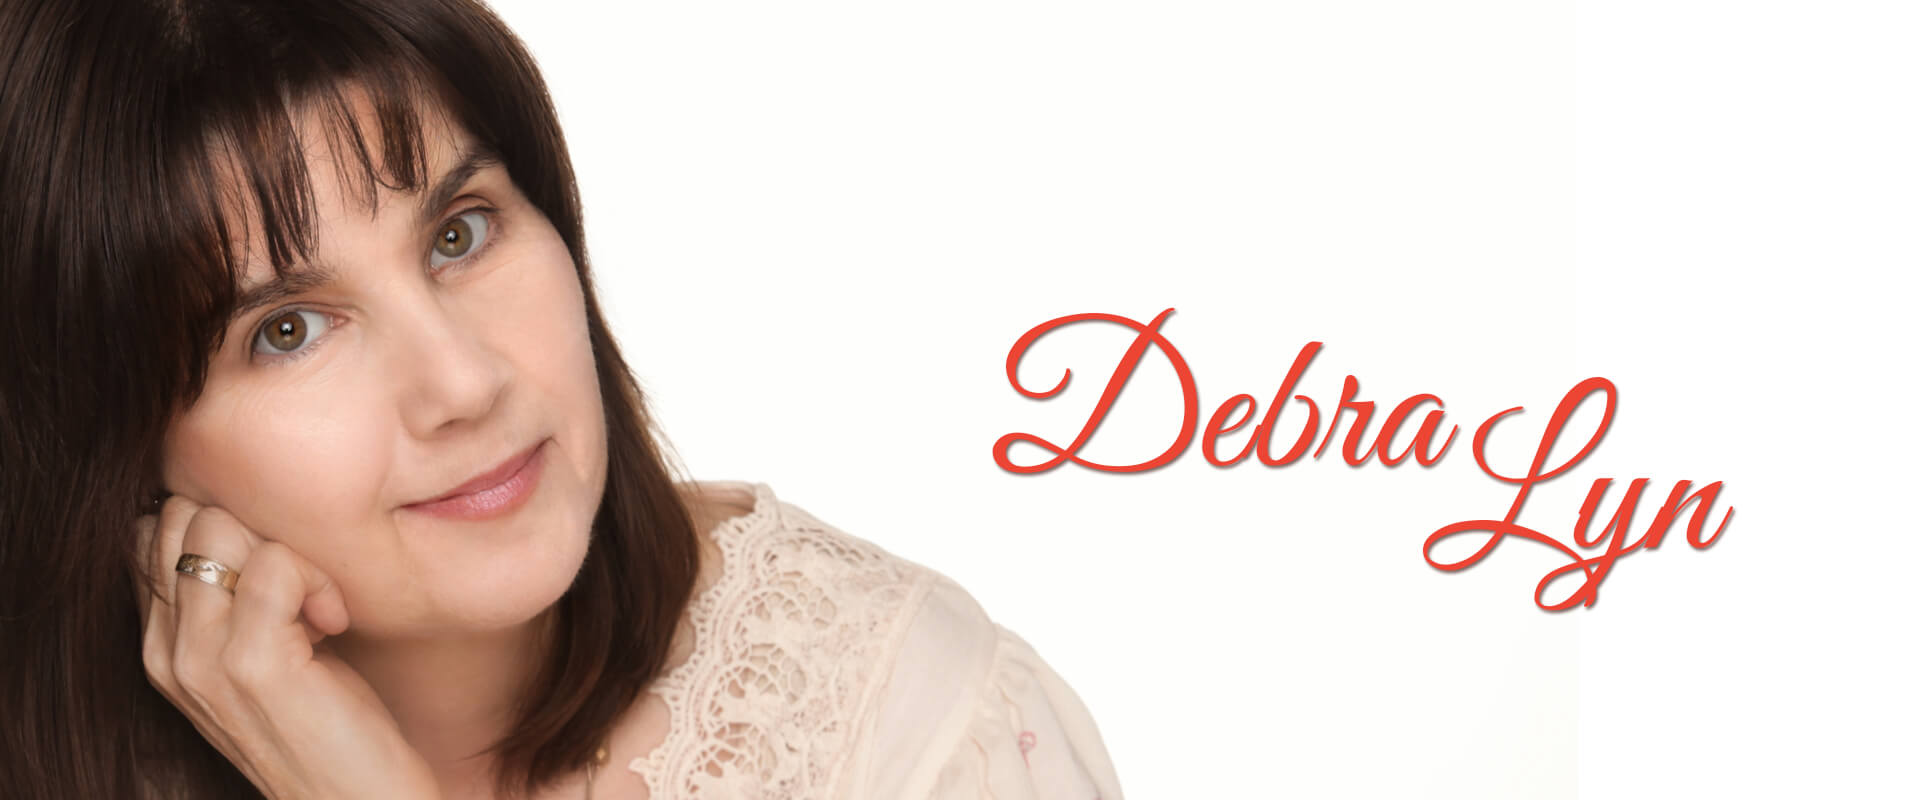 Debra Lyn, Palette Records-Nashville-Singer-Songwriter